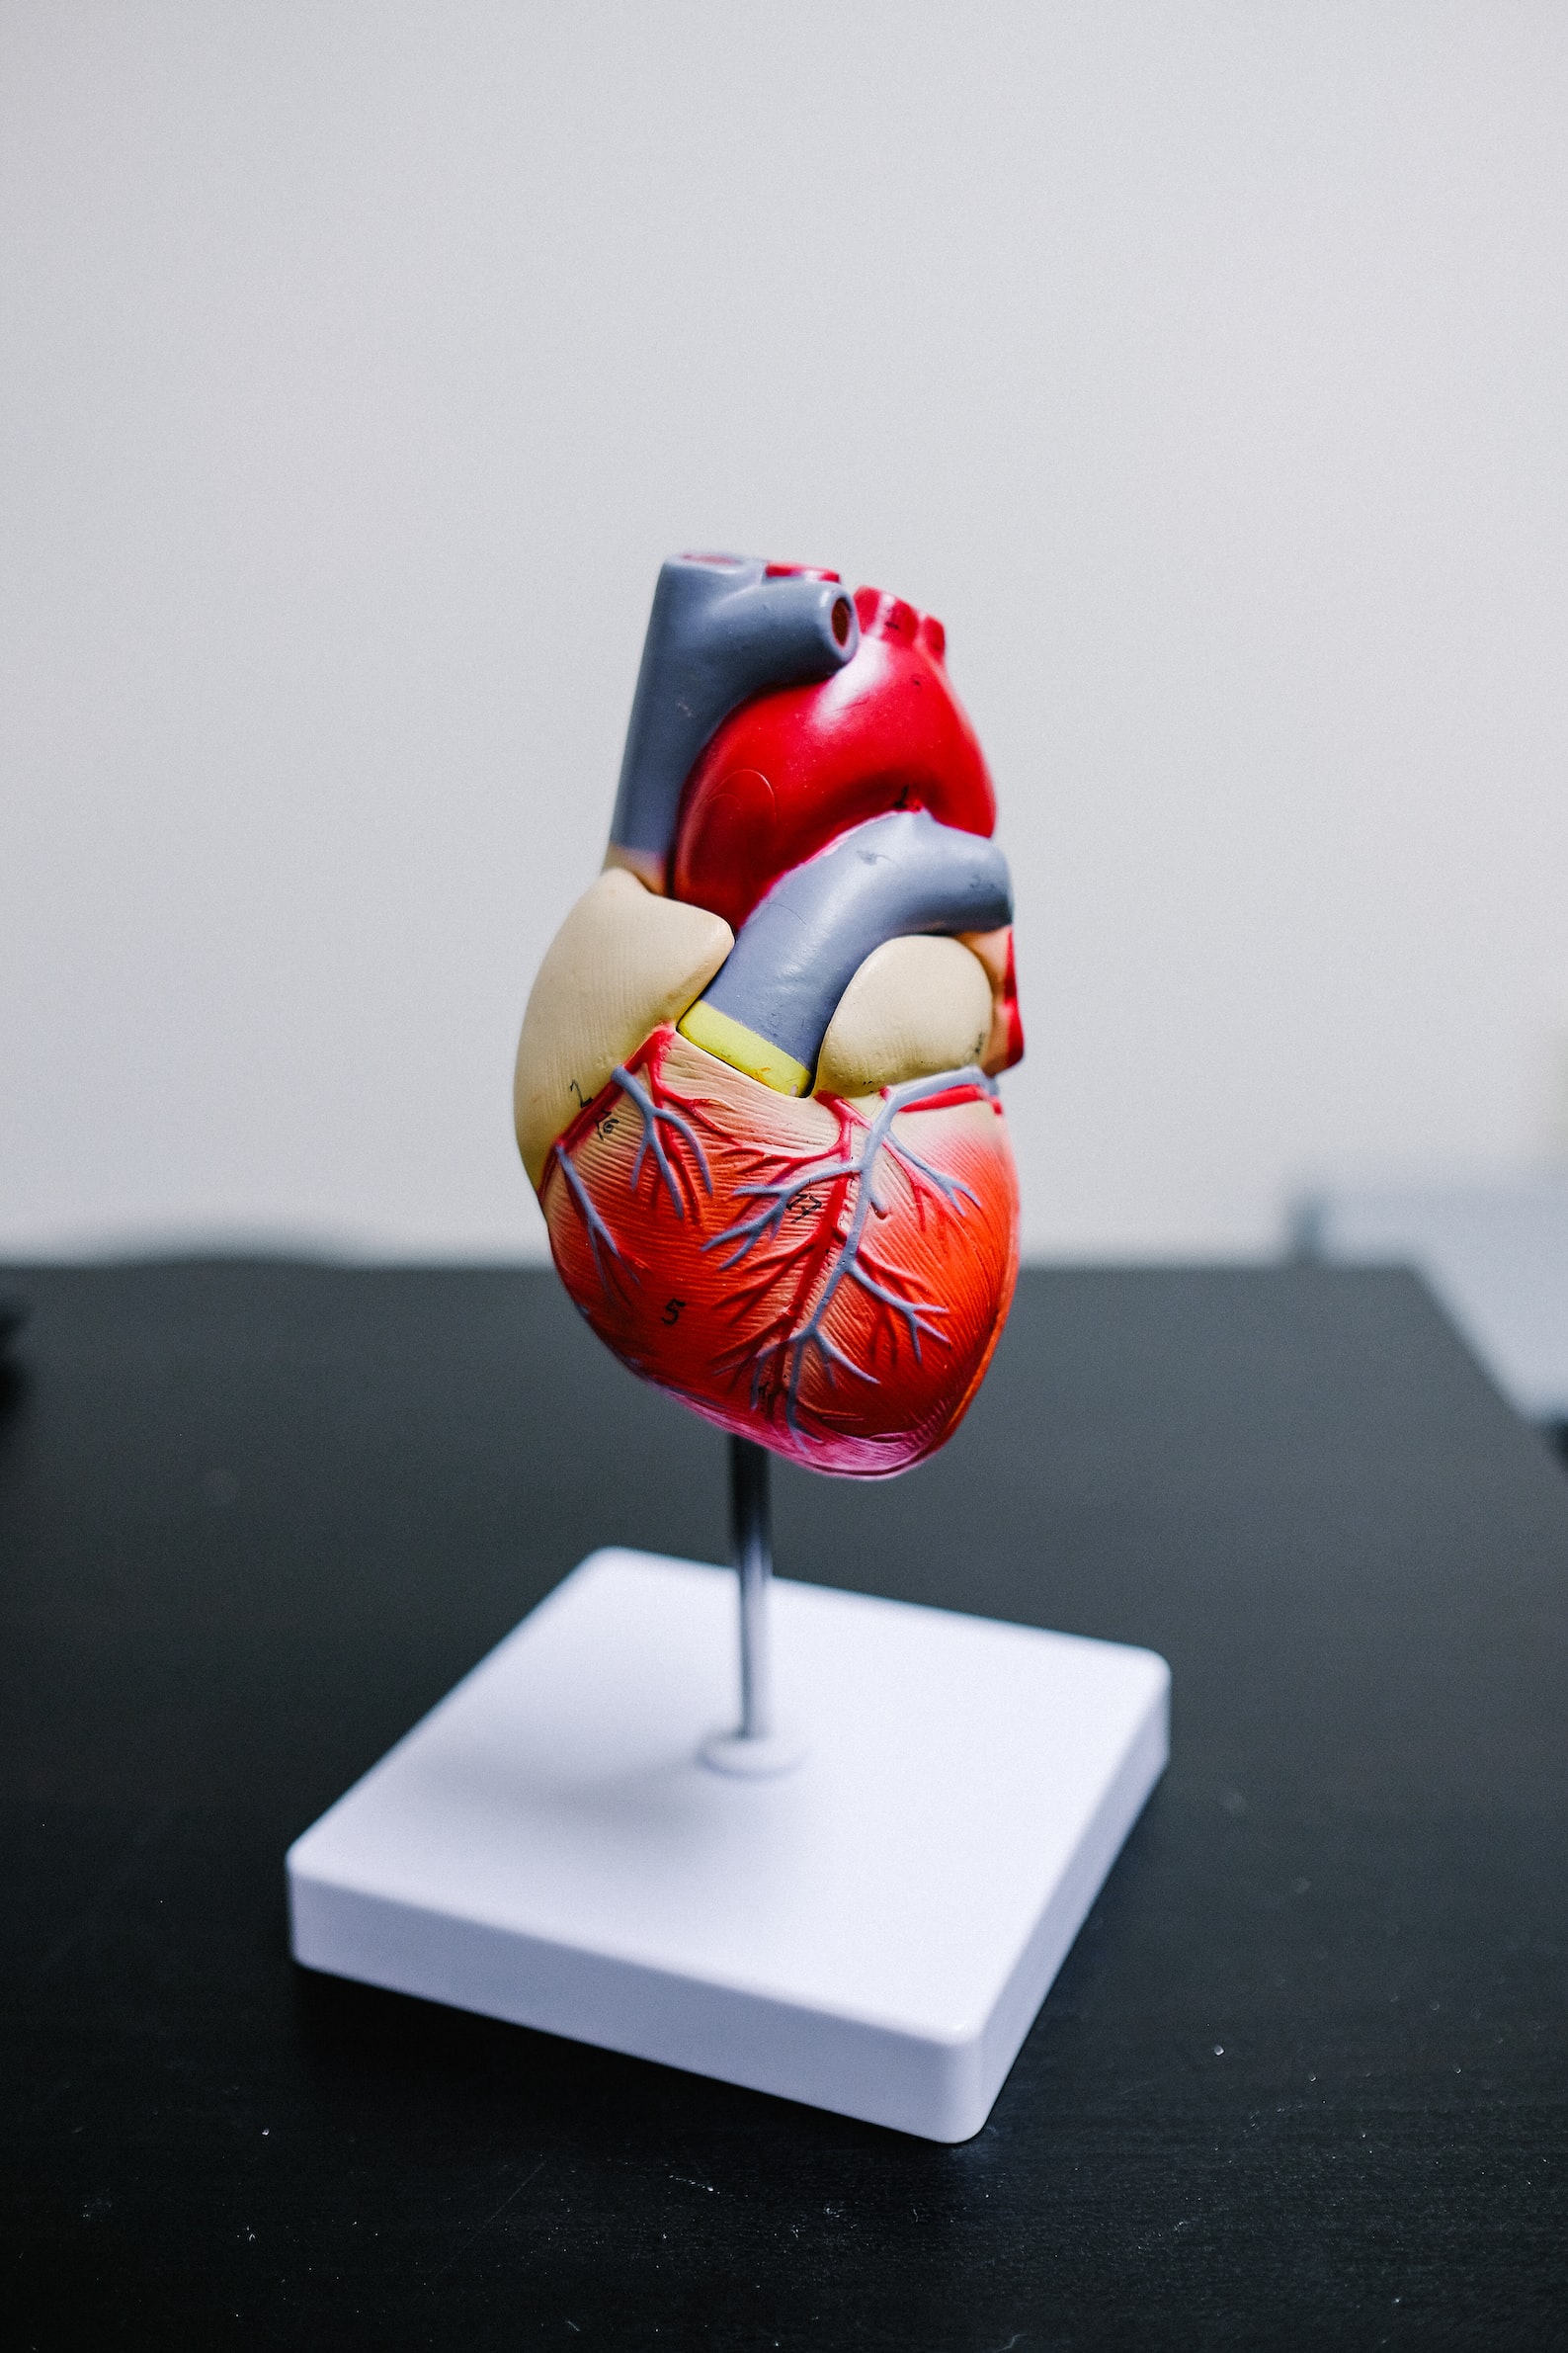 Zdjęcie przedstawia model serca, pochodzi z serwisu unsplash.com